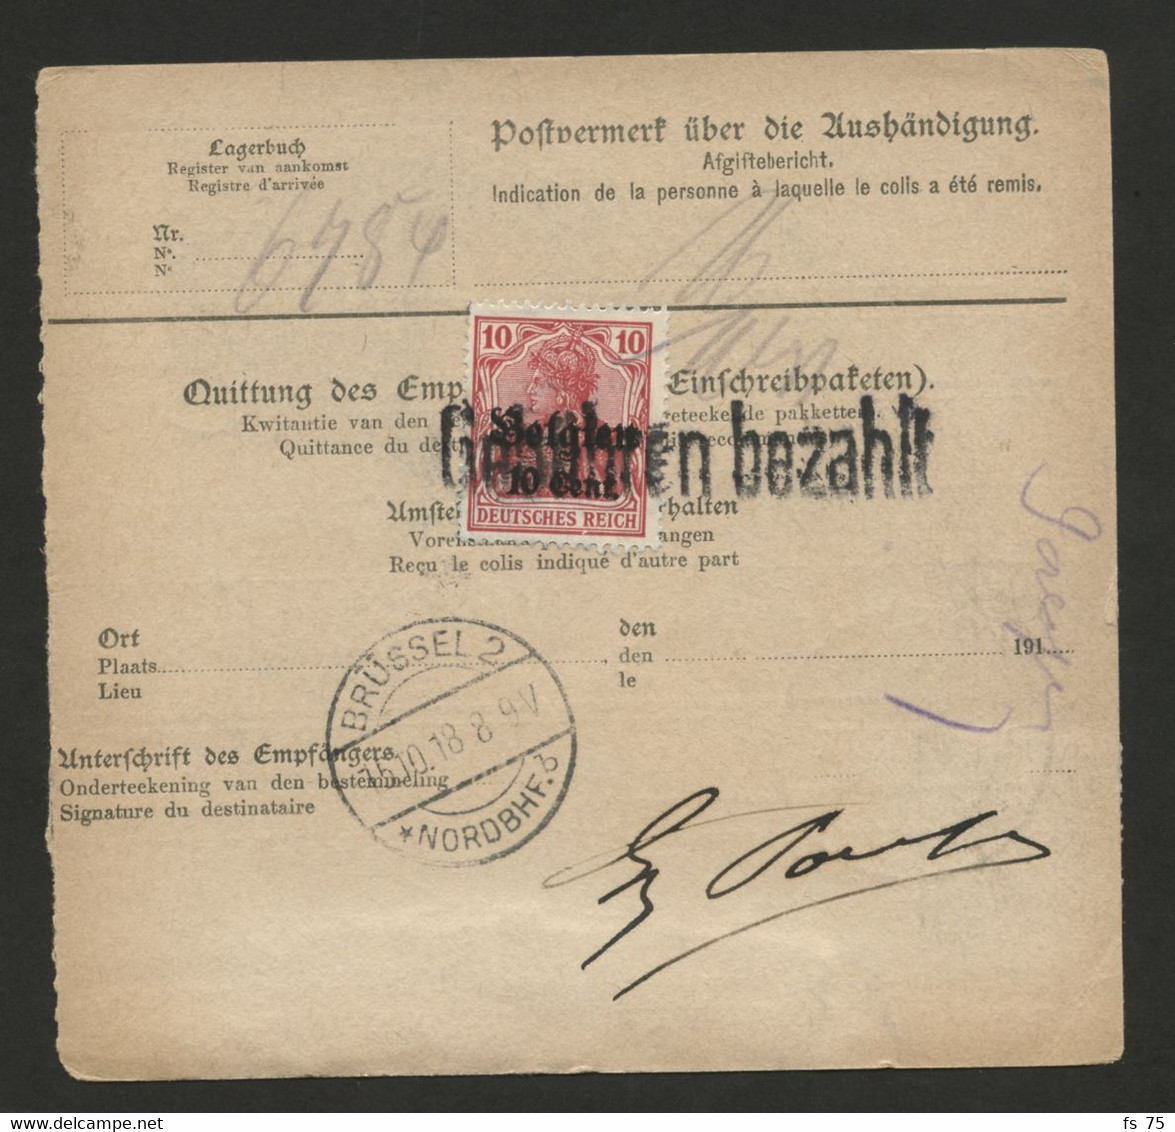 BELGIQUE - COB OC 21 LEOPOLDSBURG + AU VERSO OC 14 GRIFFE GEBUHREN BEZAHLT SUR BULLETIN DE COLIS POSTAL, 1918 - Armée Allemande